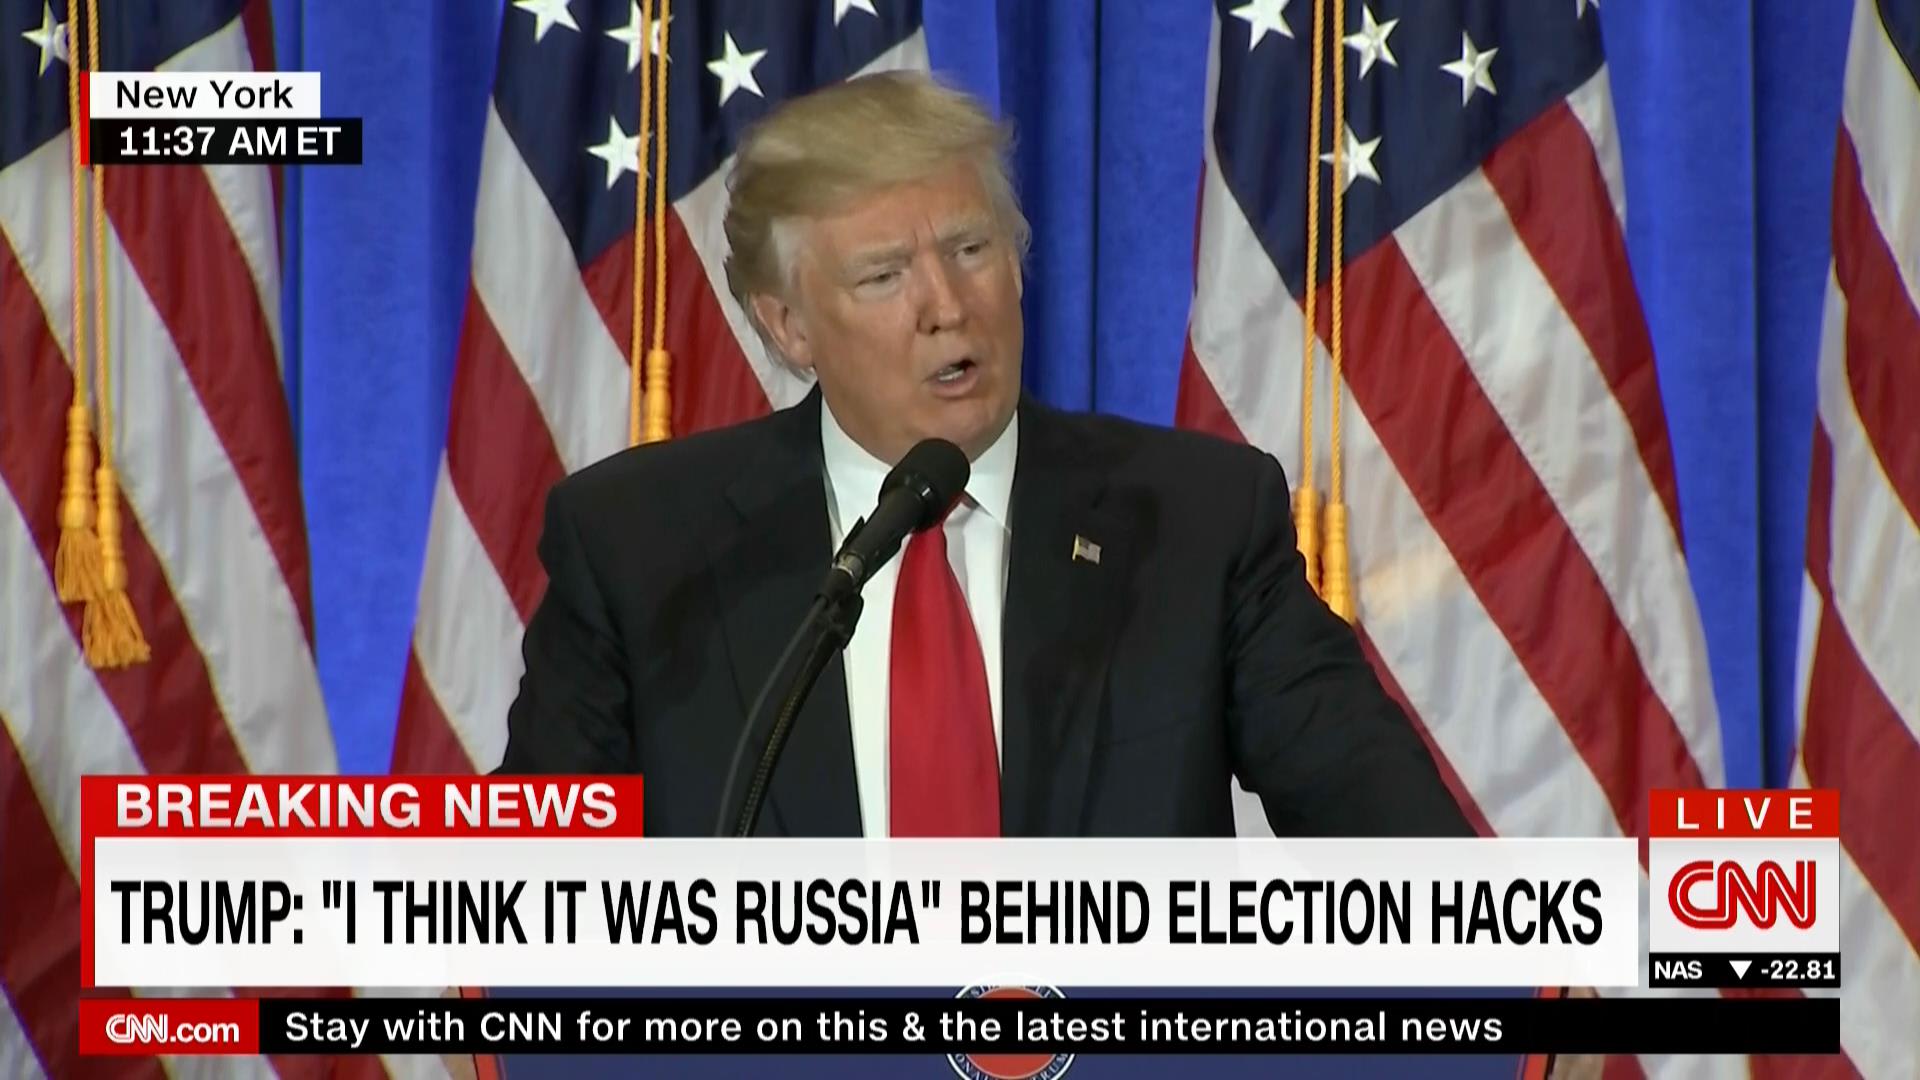 ترامب بأول مؤتمر صحفي منذ انتخابه: أعتقد أن روسيا كانت وراء قرصنة الانتخابات الأمريكية.. وحقيقة أن بوتين يحبني "ميزة"